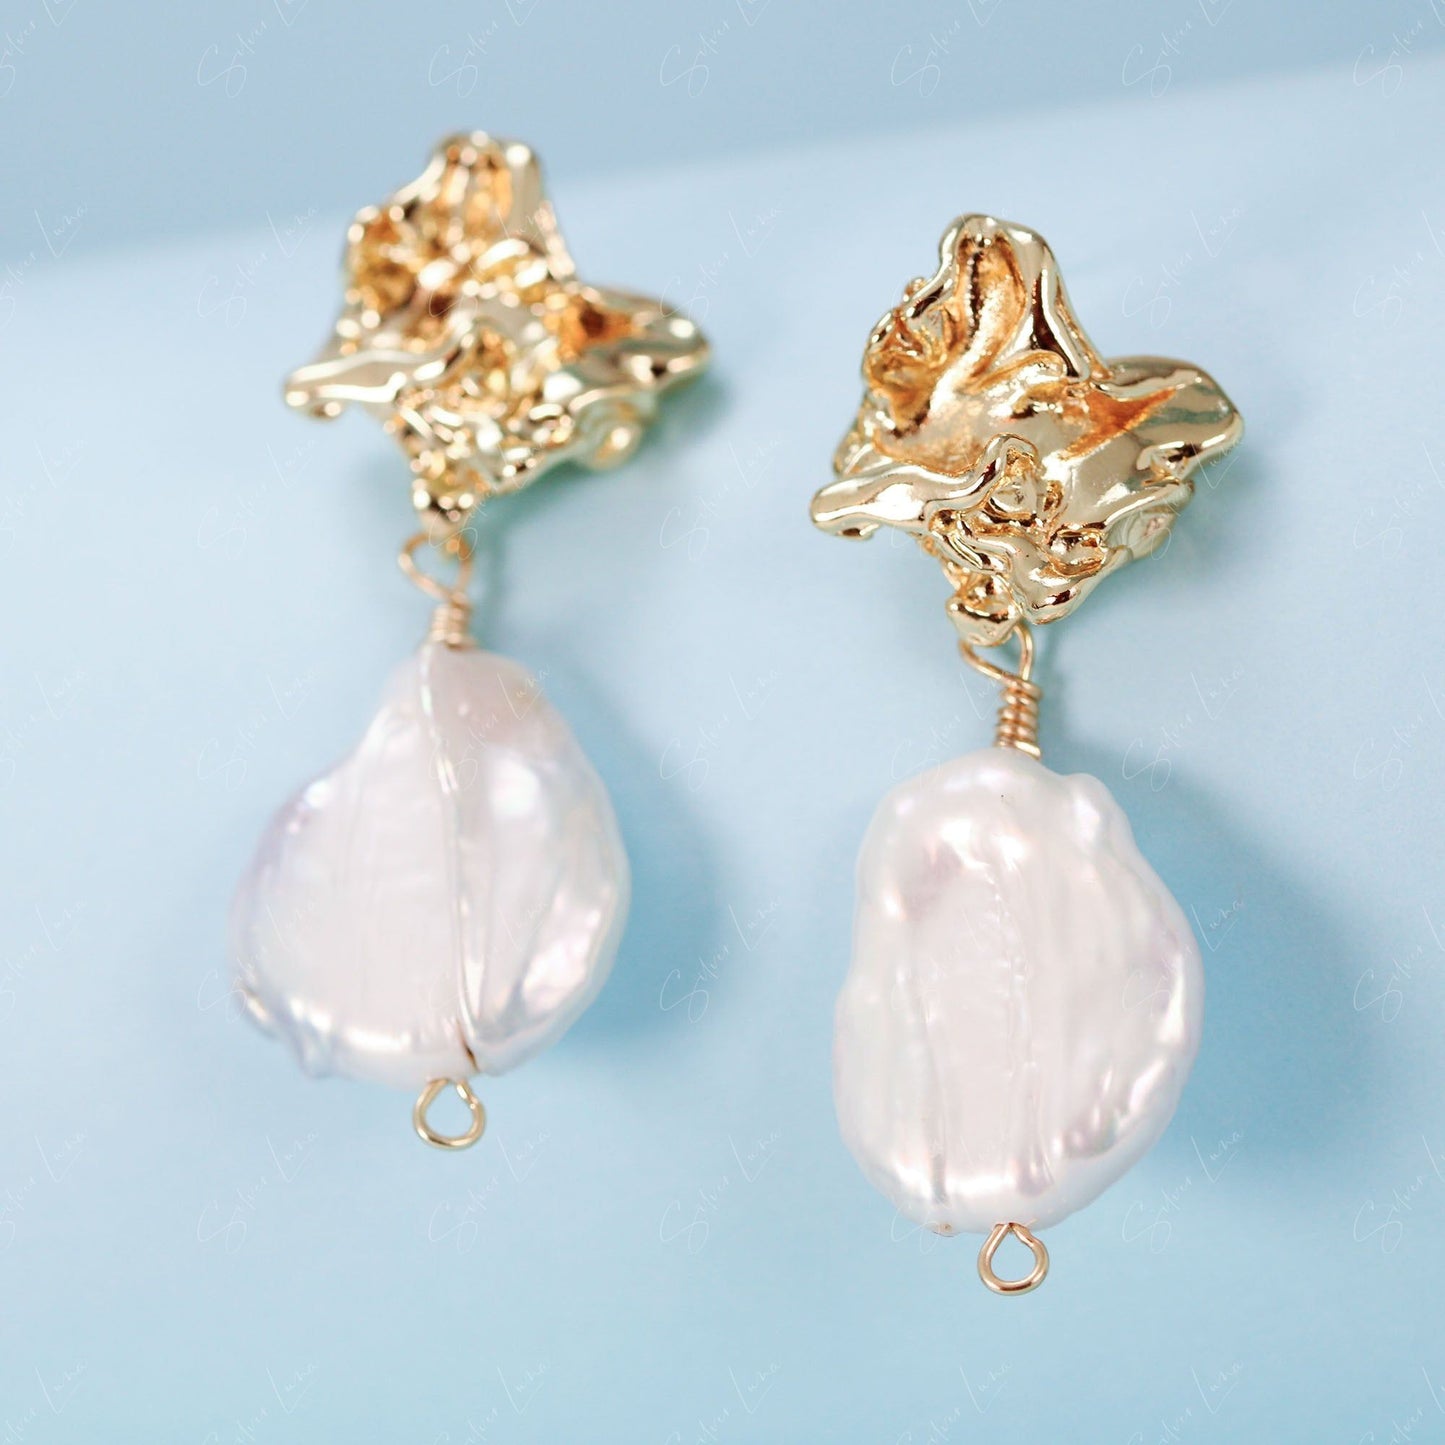 Natural freshwater irregular pearl drop earrings